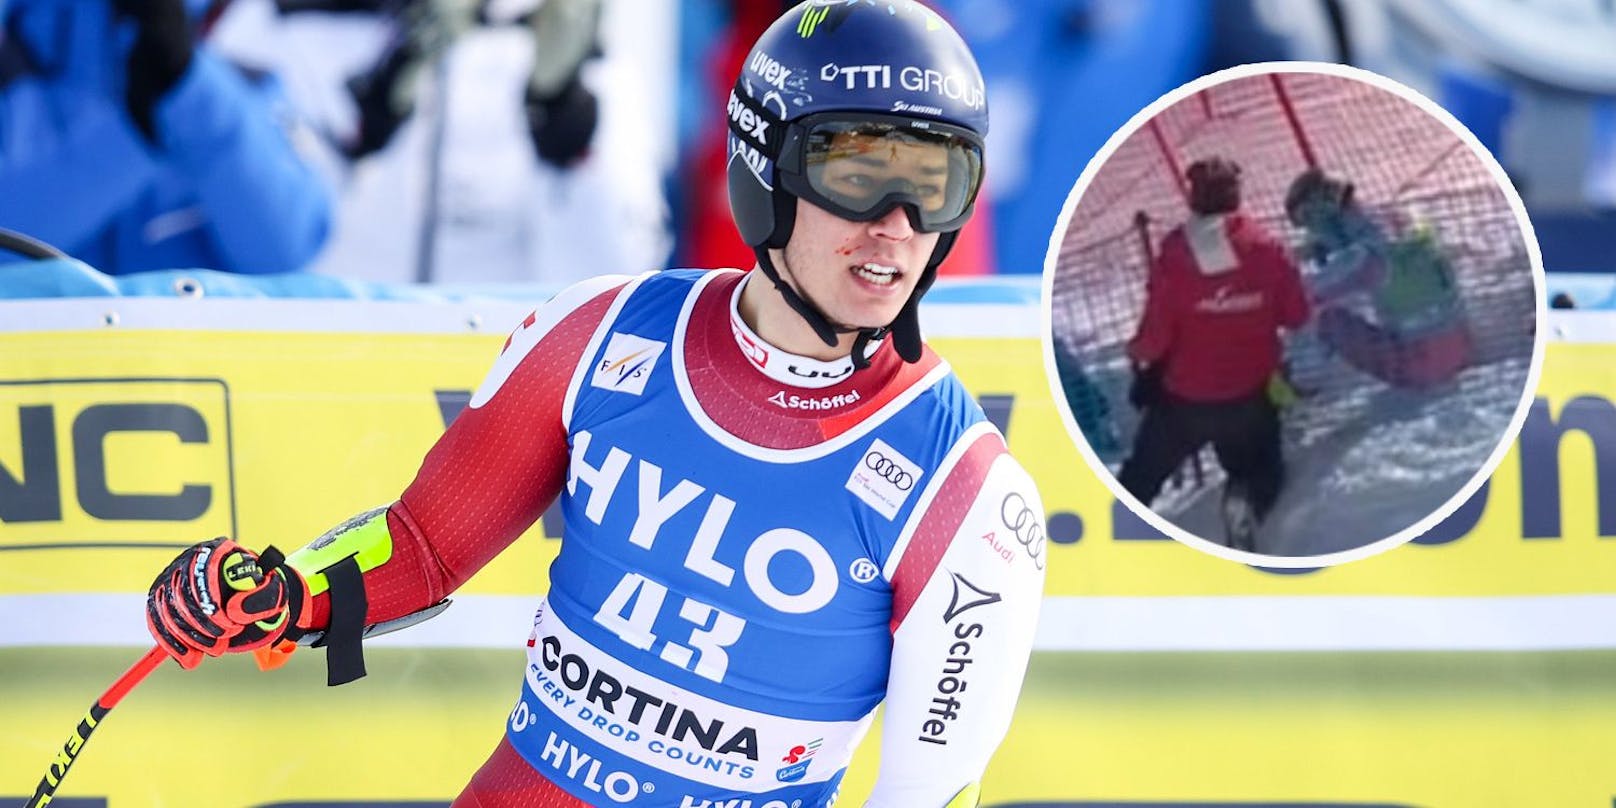 Lukas Feurstein verletzte sich in Cortina schwer